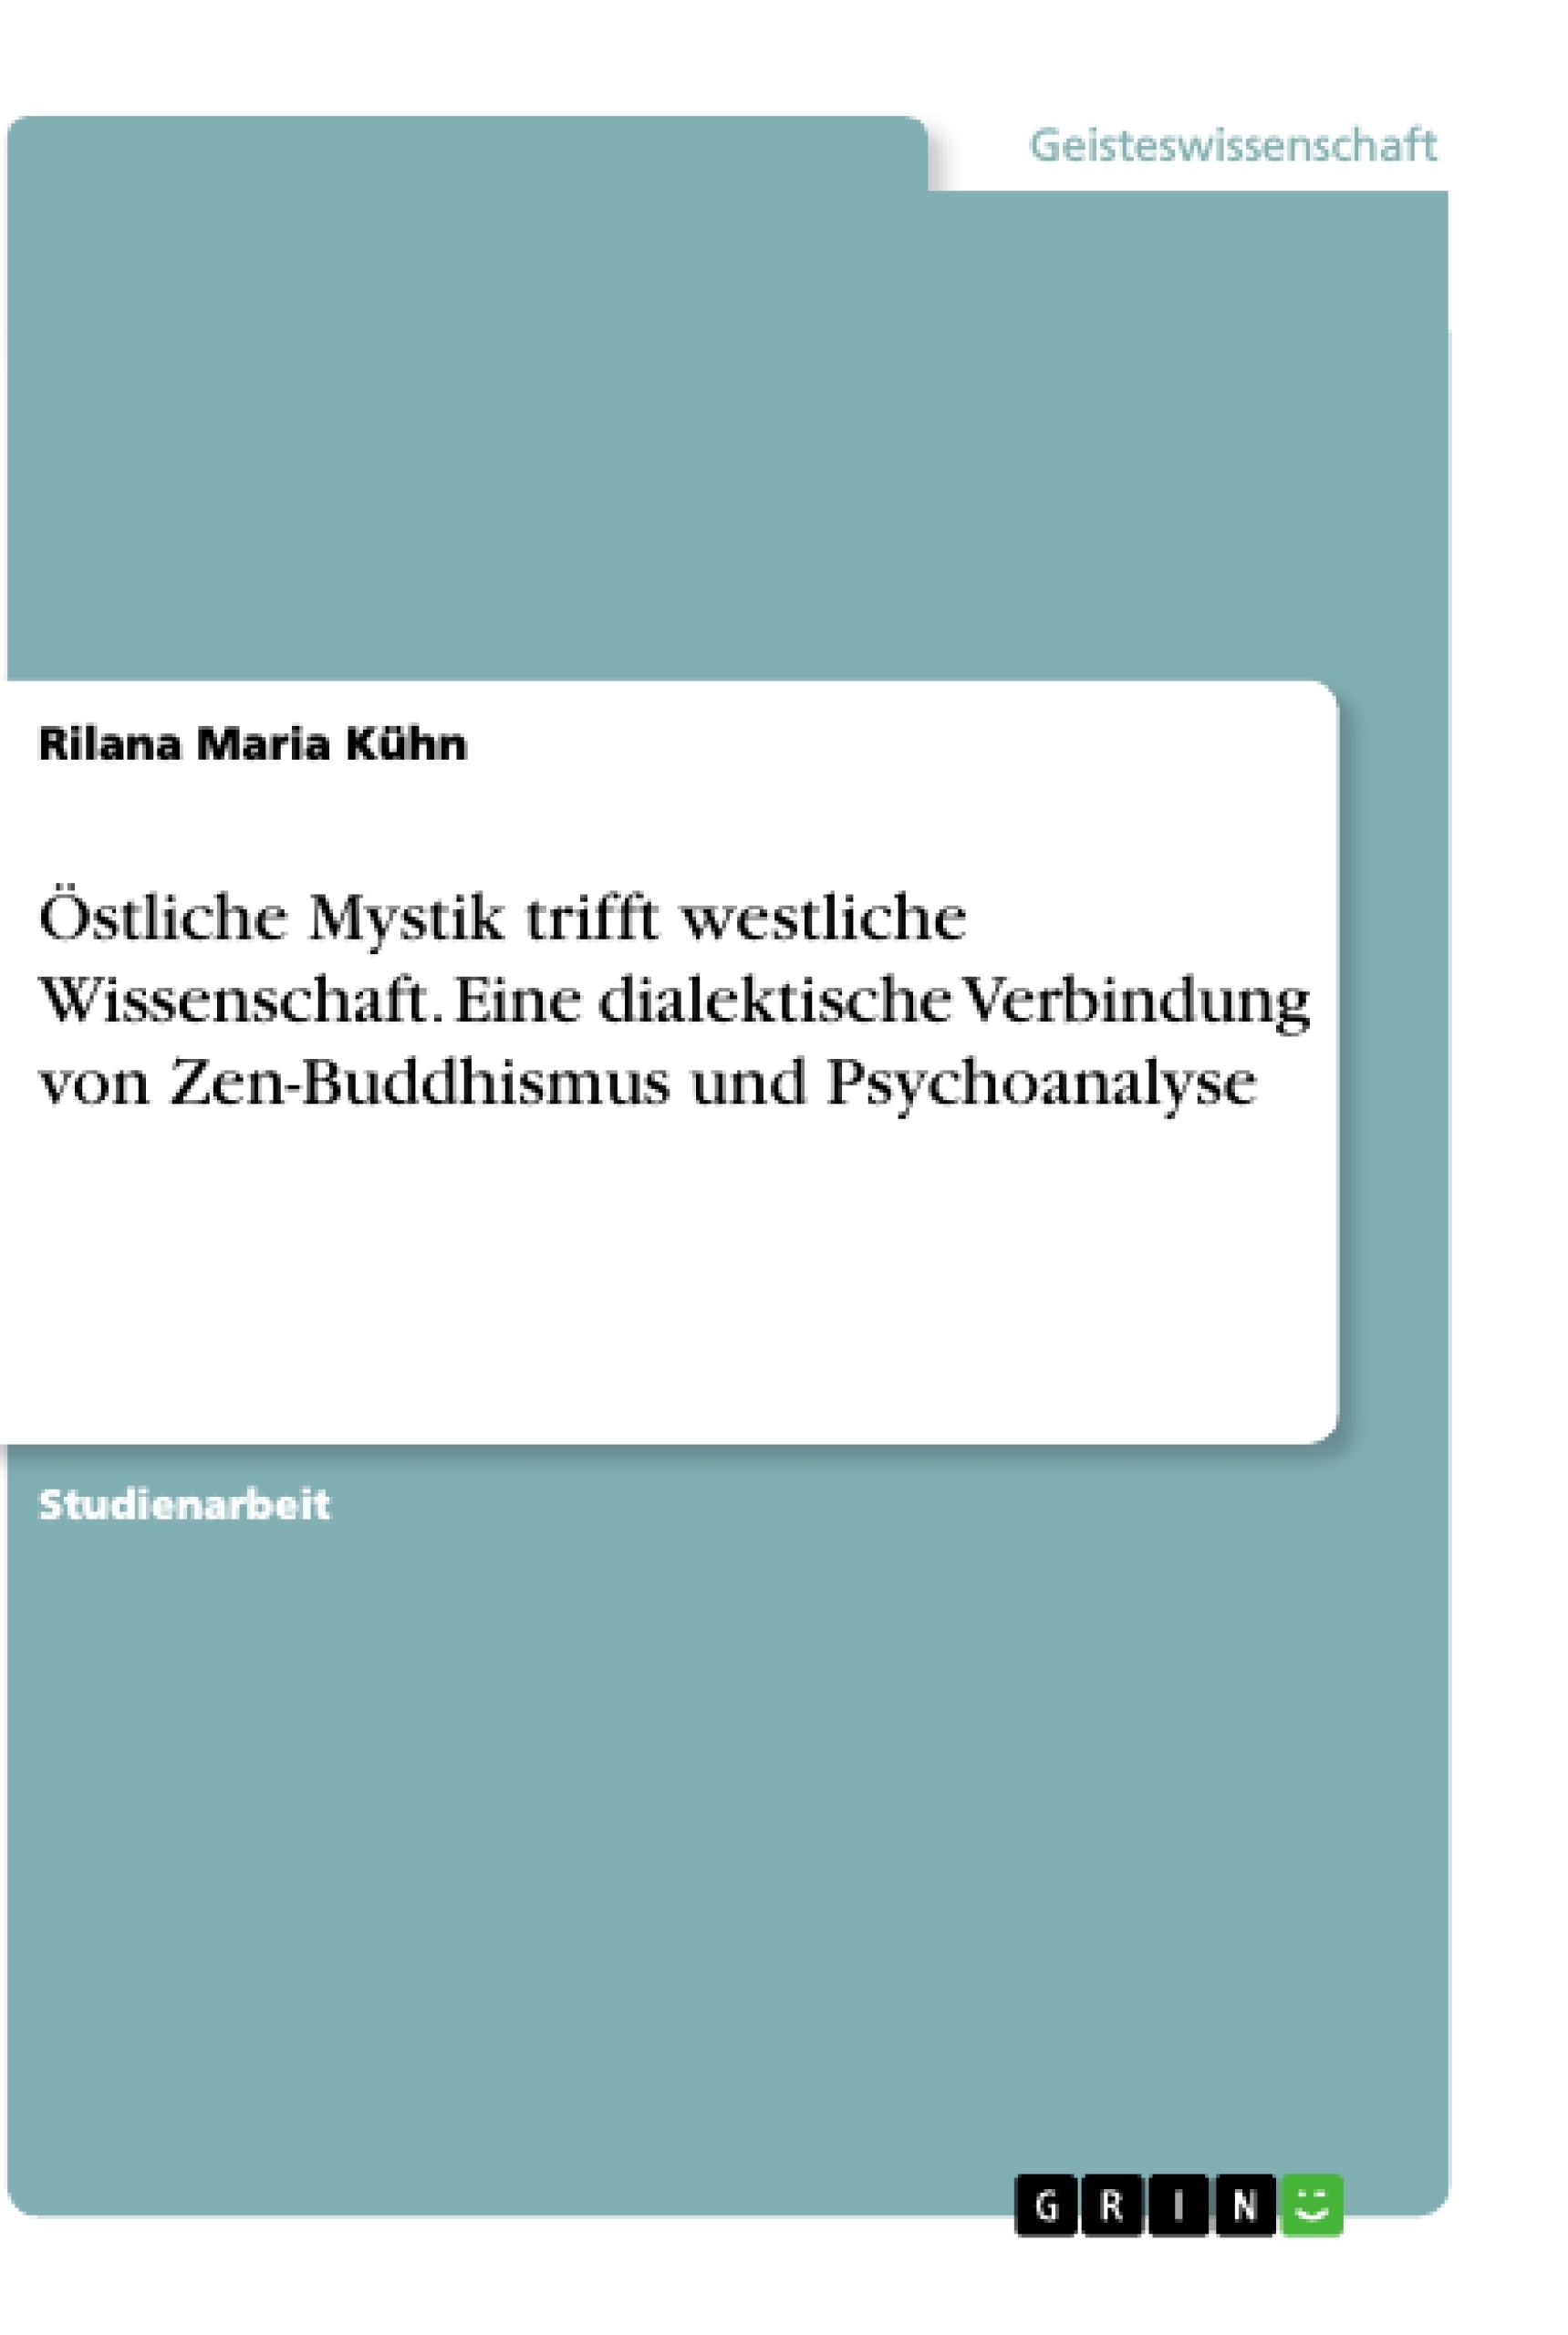 Título: Östliche Mystik trifft westliche Wissenschaft. Eine dialektische Verbindung von Zen-Buddhismus und Psychoanalyse